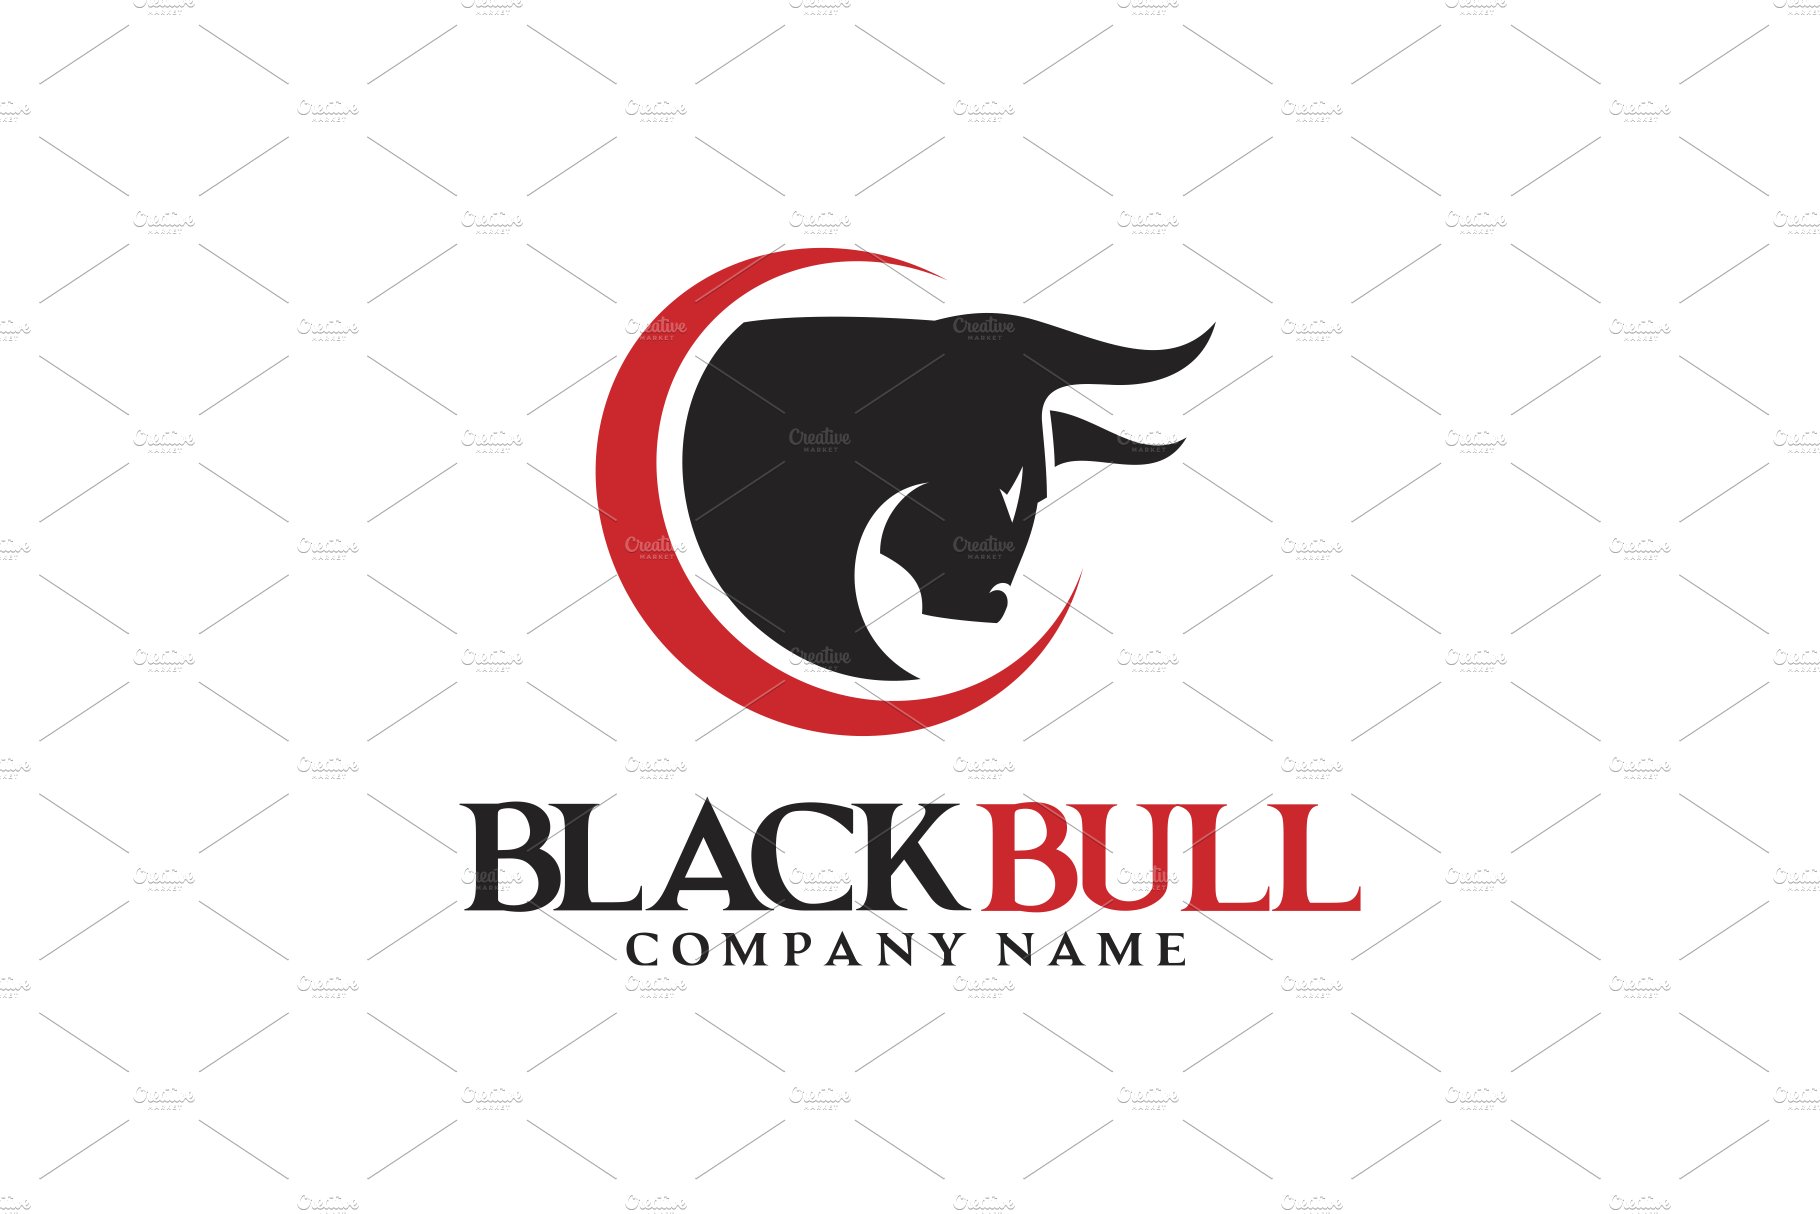 Black Bull Logo cover image.